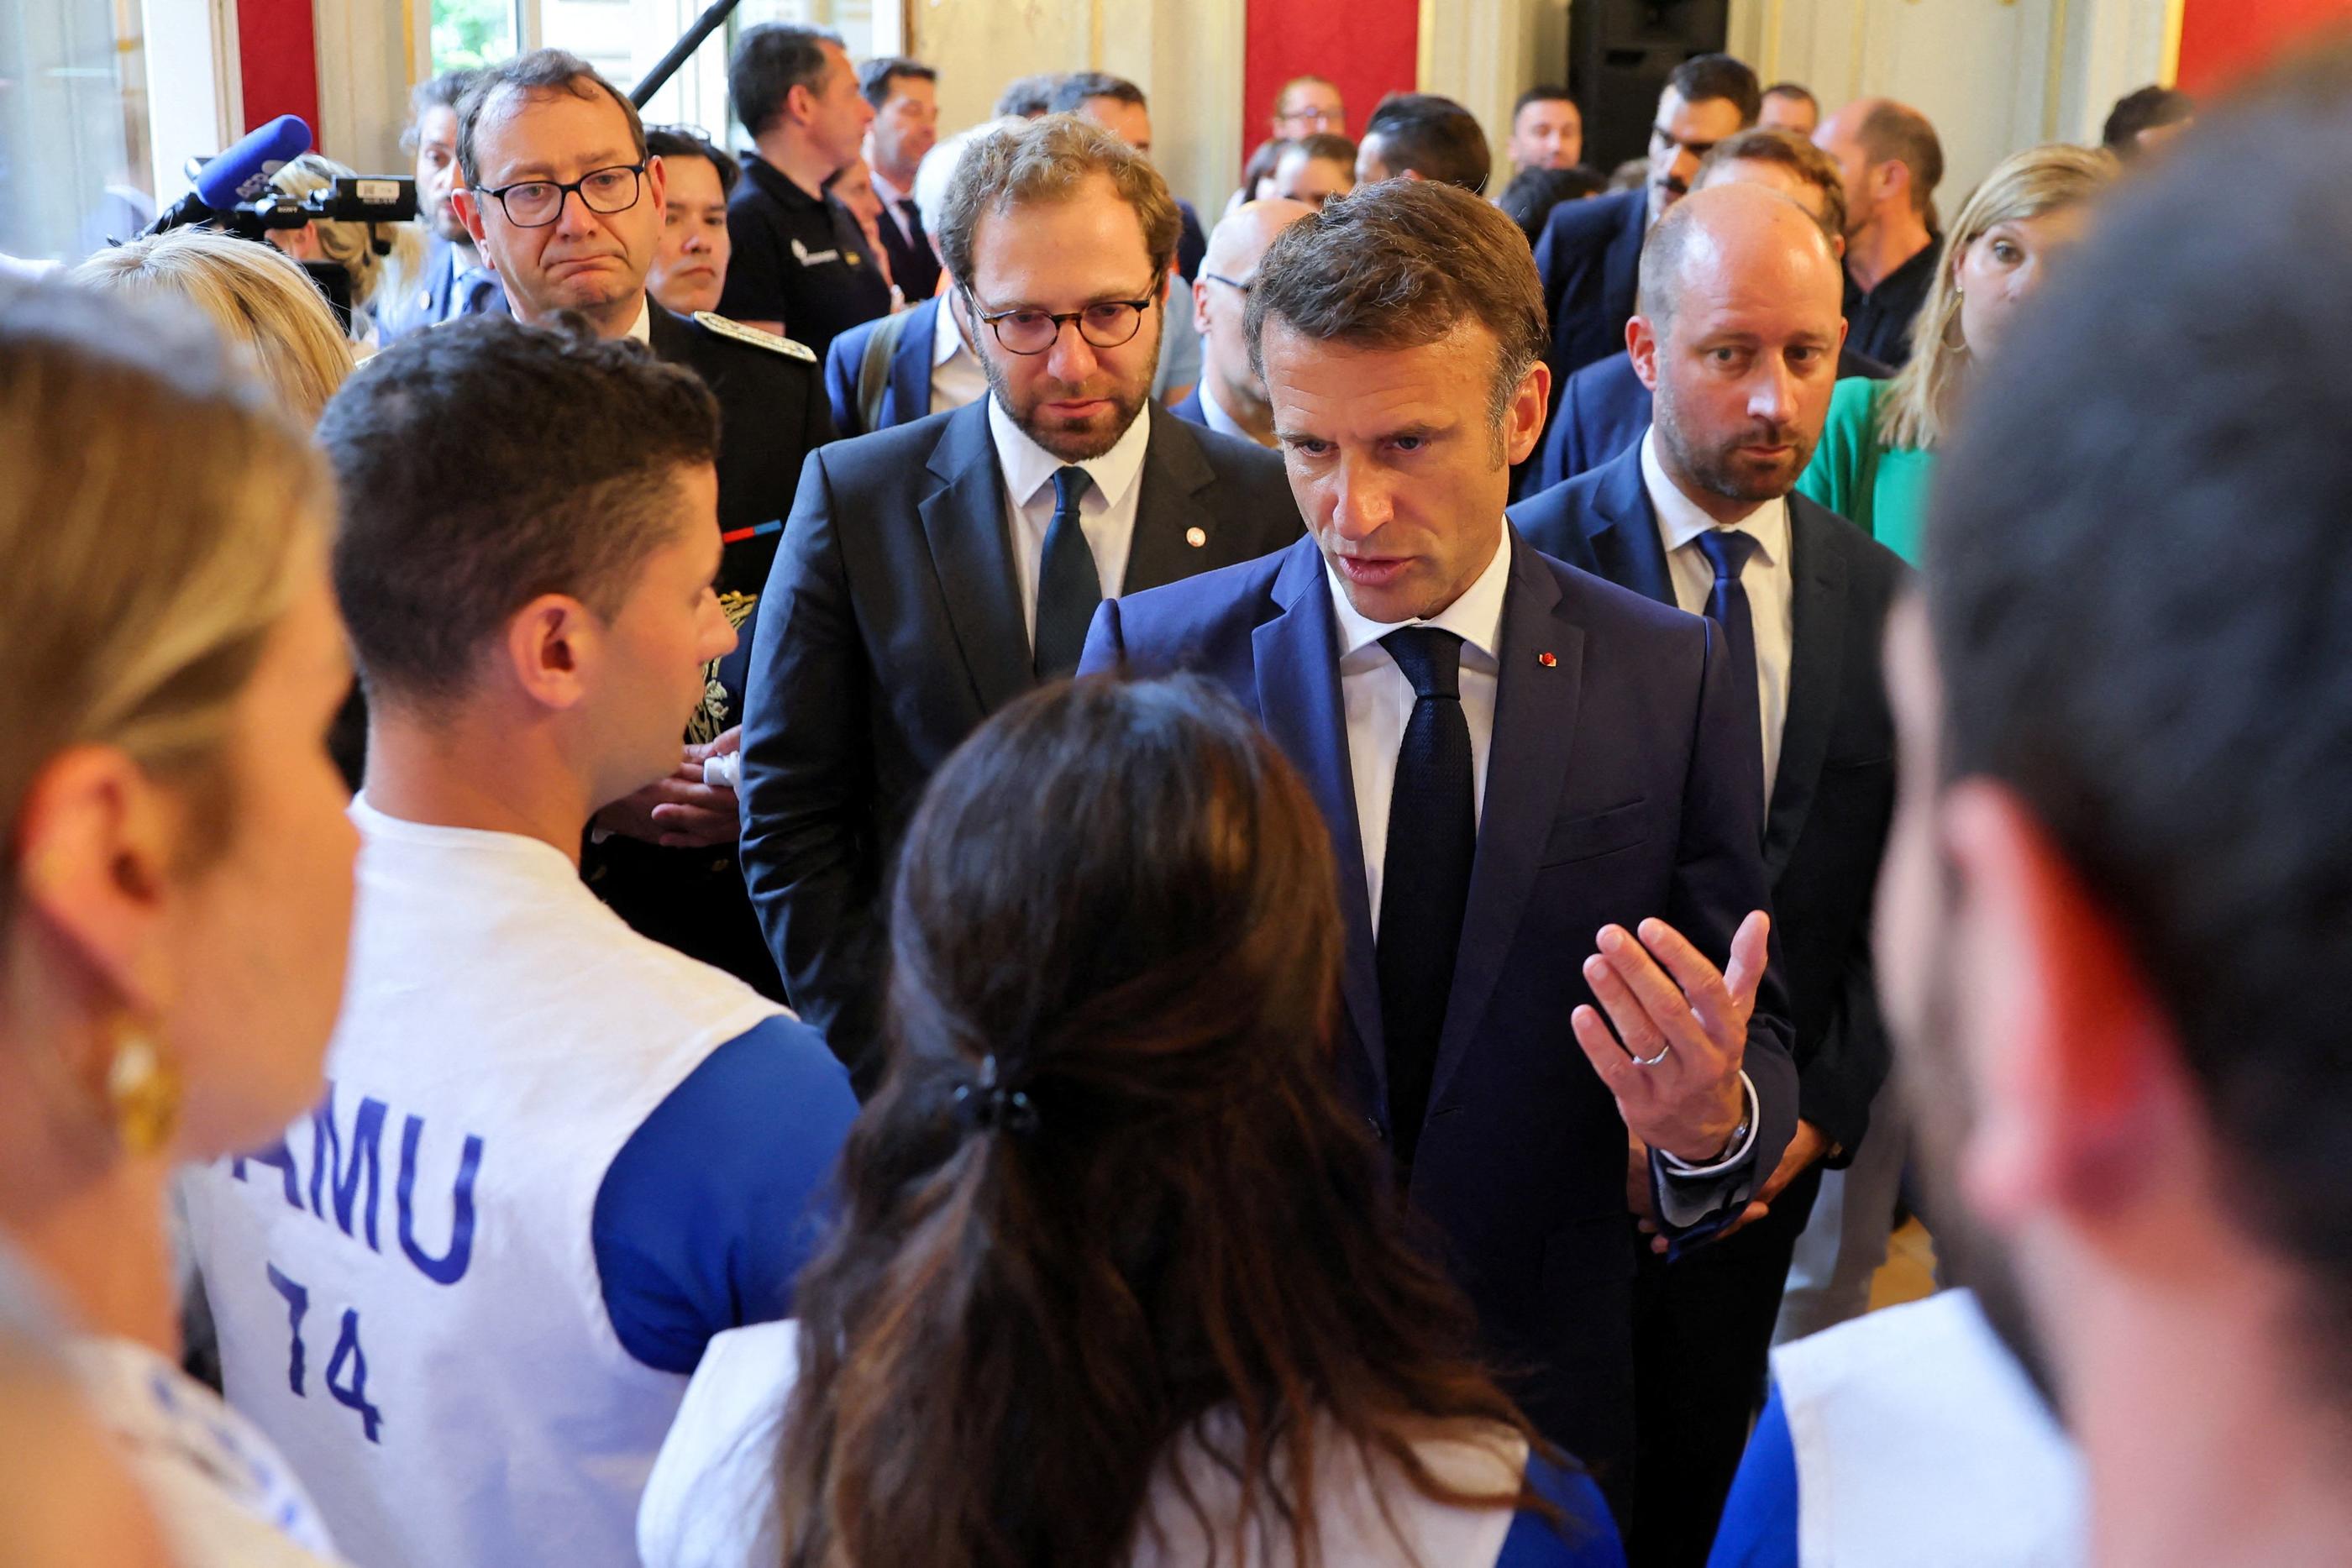 Le président Emmanuel Macron discute avec les secours qui ont pris en charge les victimes de l'attaque d'Annecy. AFP/Denis Balibouse